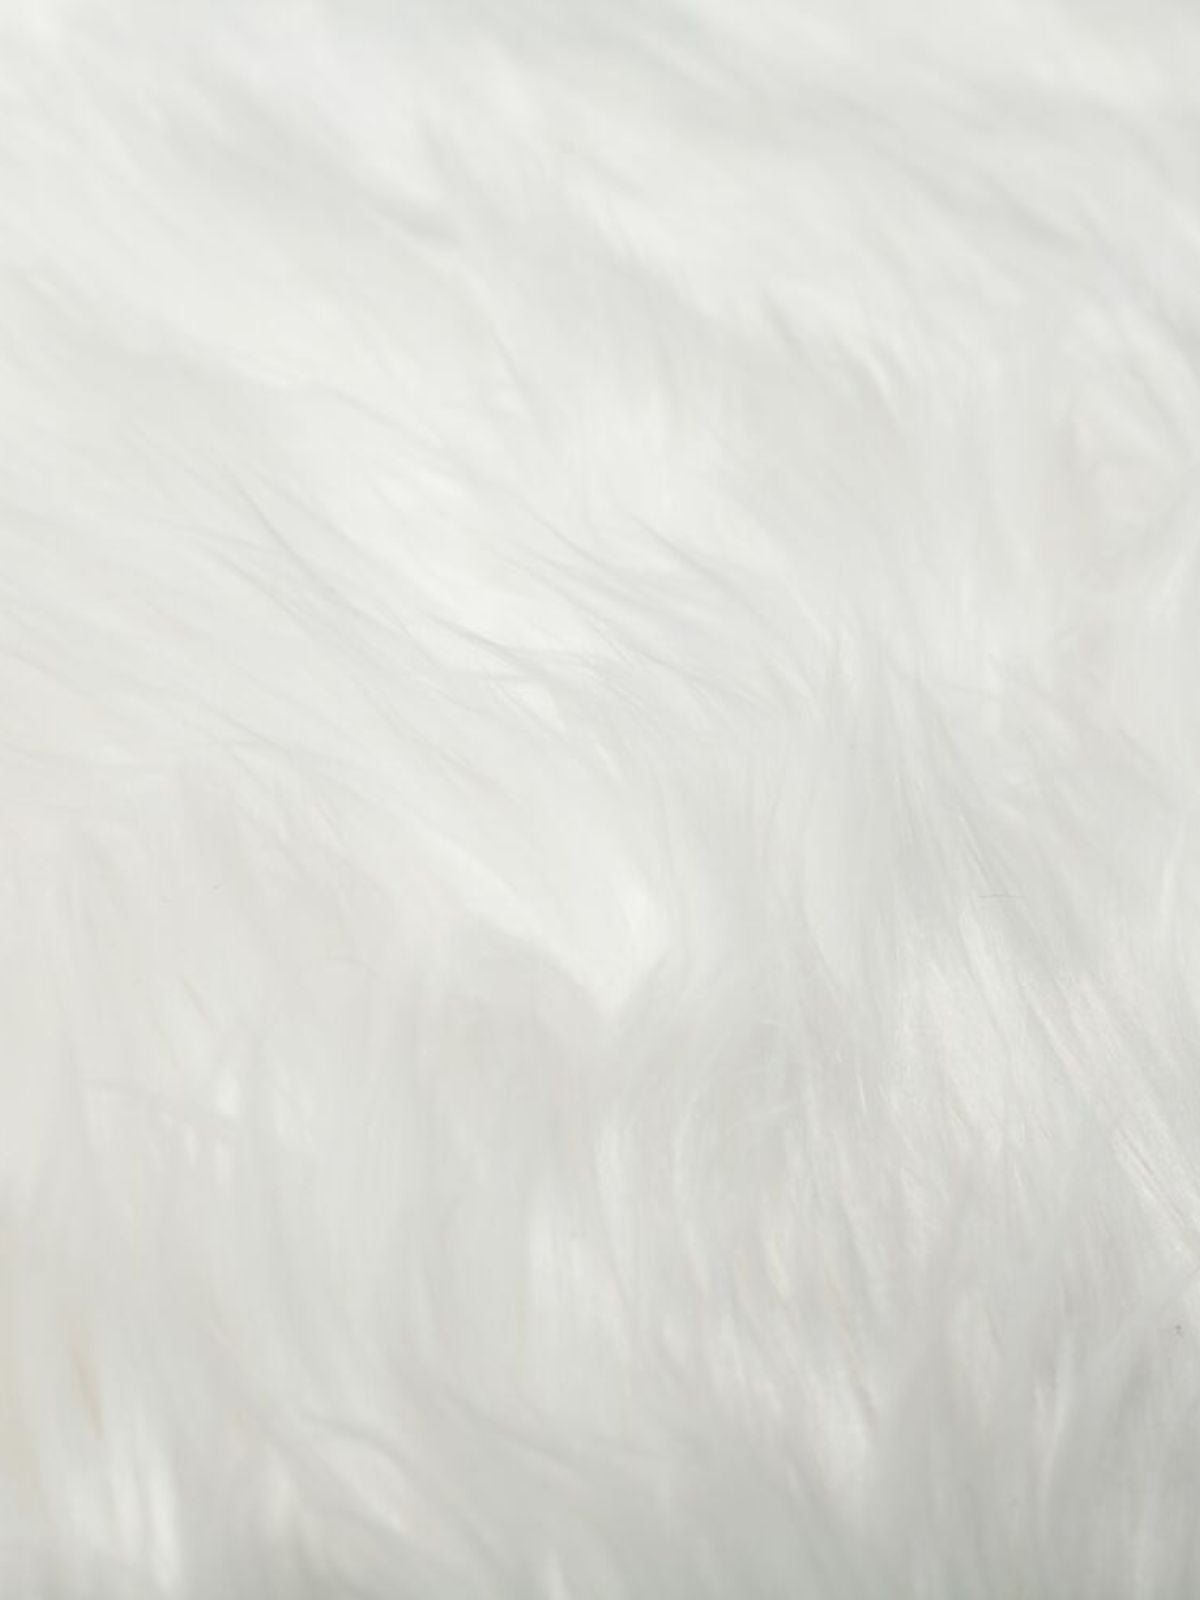 Tappeto shaggy Sheepskin in poliestere, colore avorio 60x90 cm.-3